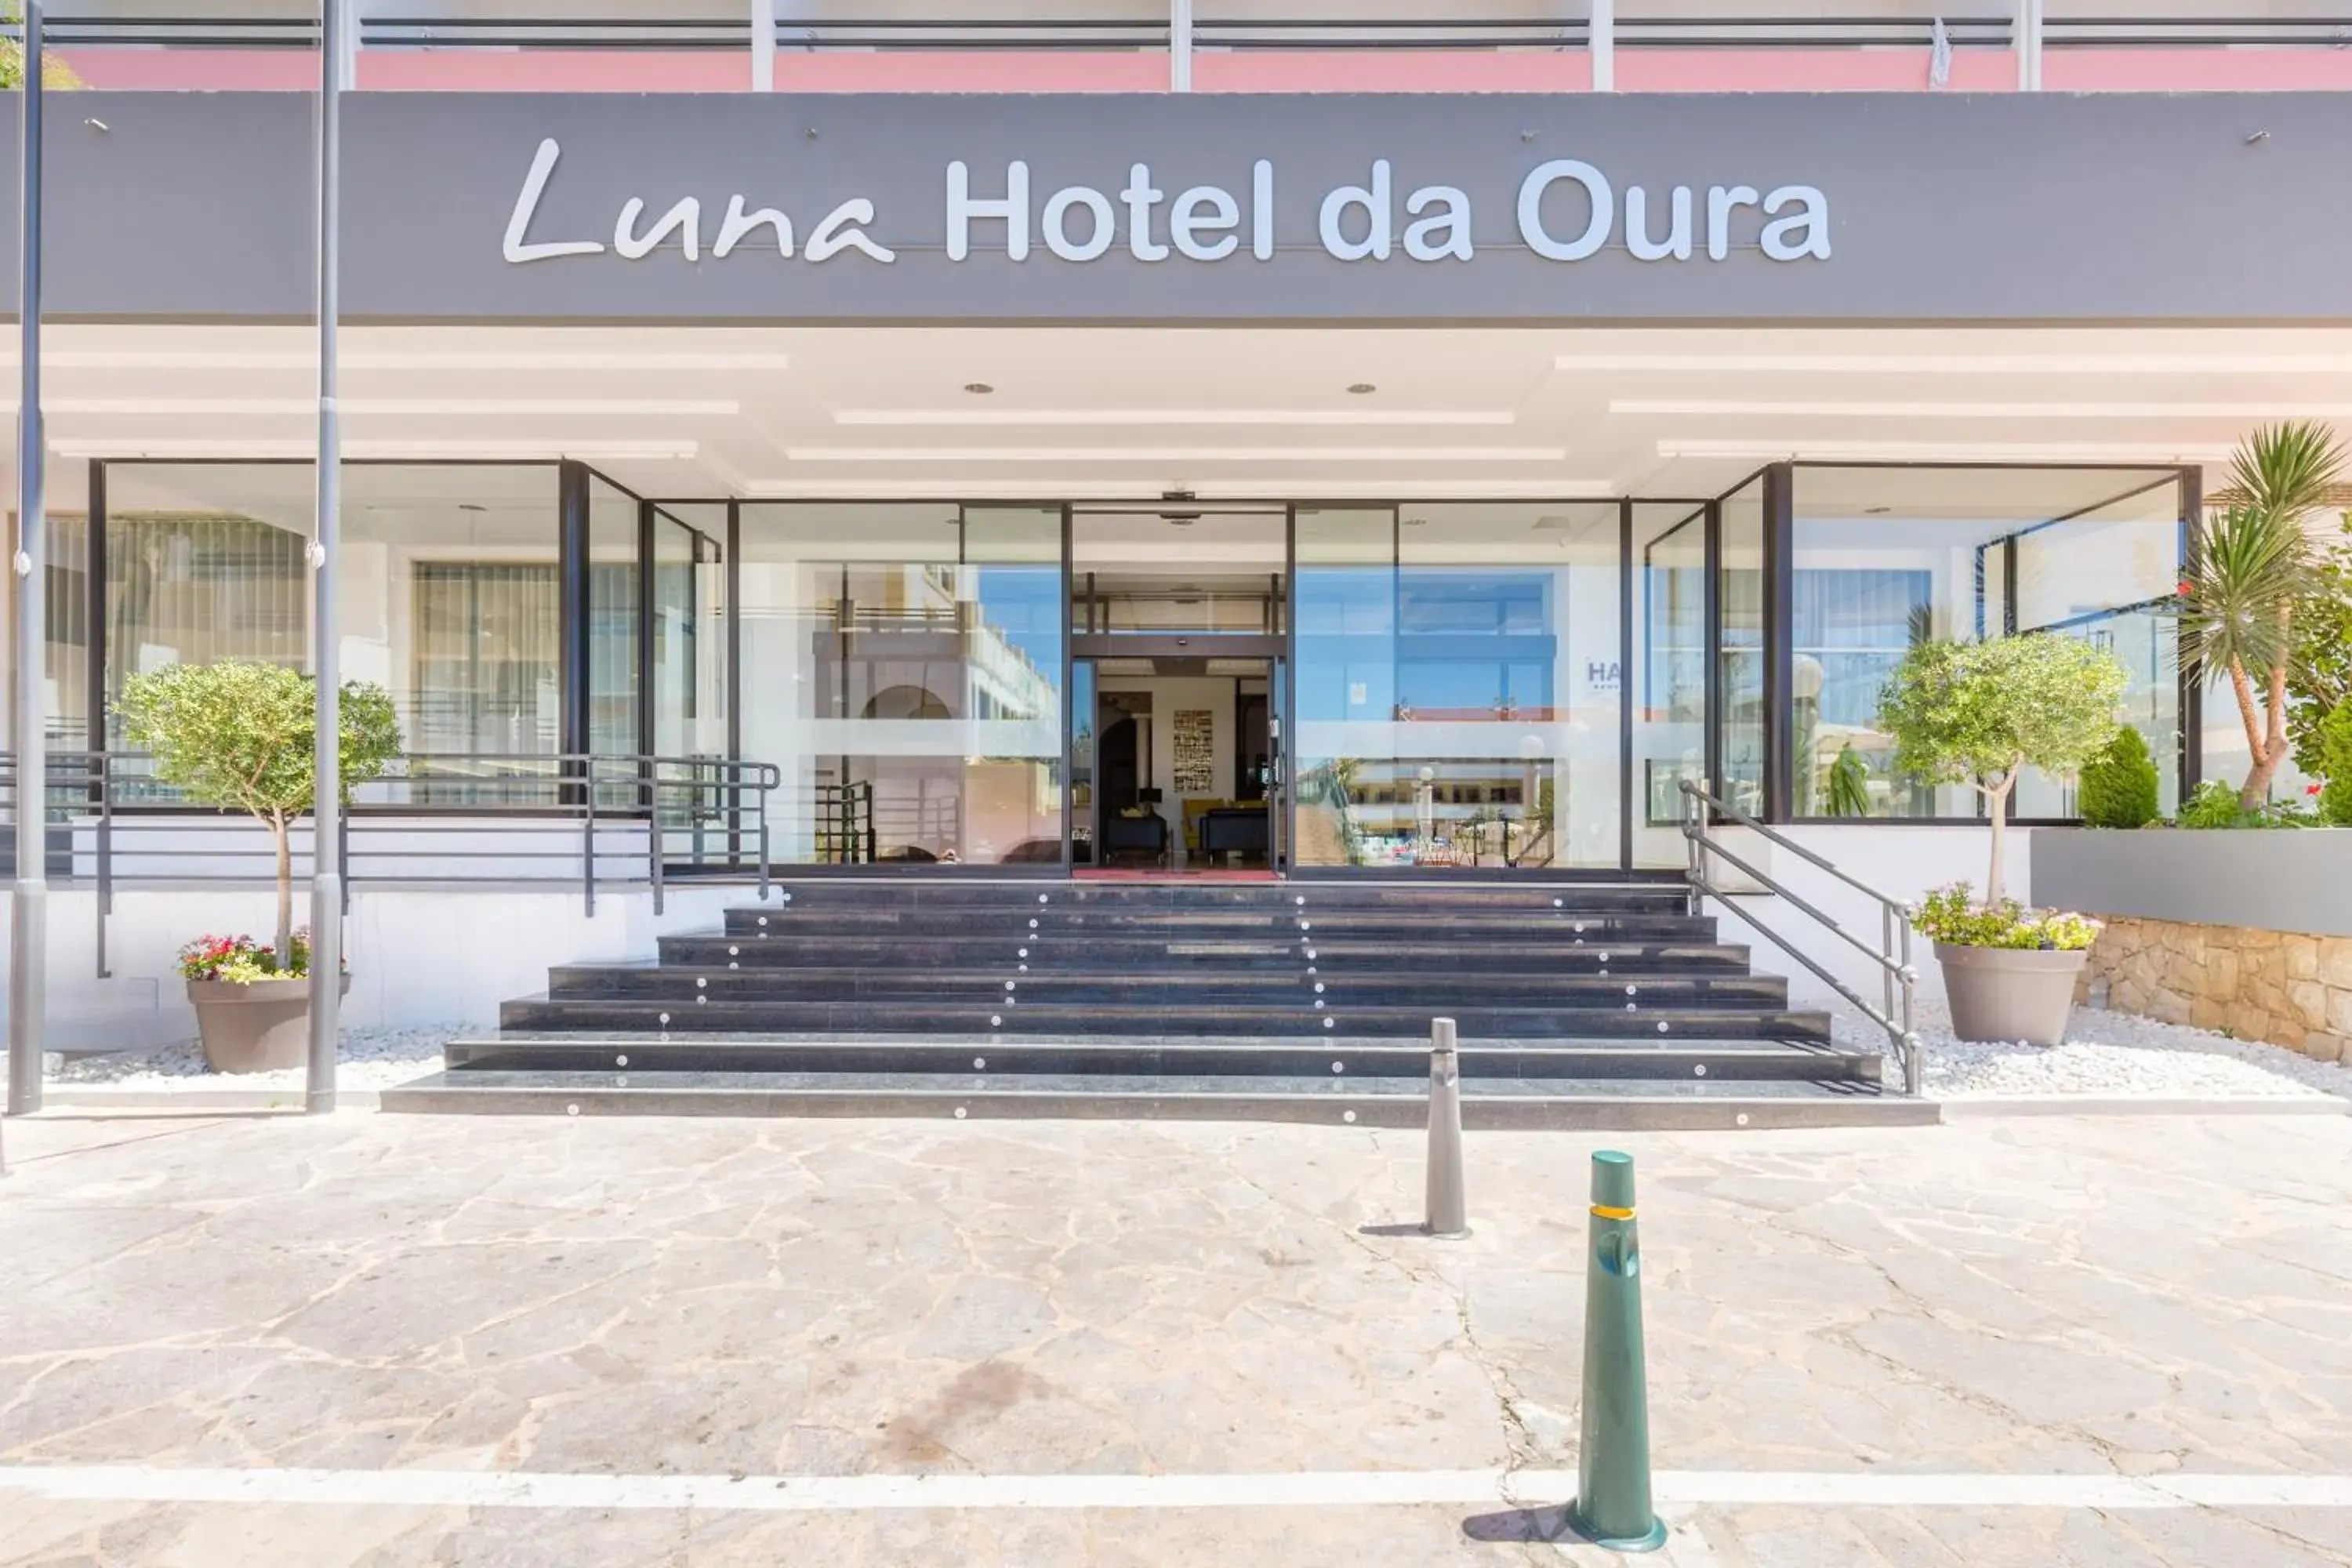 Facade/entrance in Luna Hotel da Oura